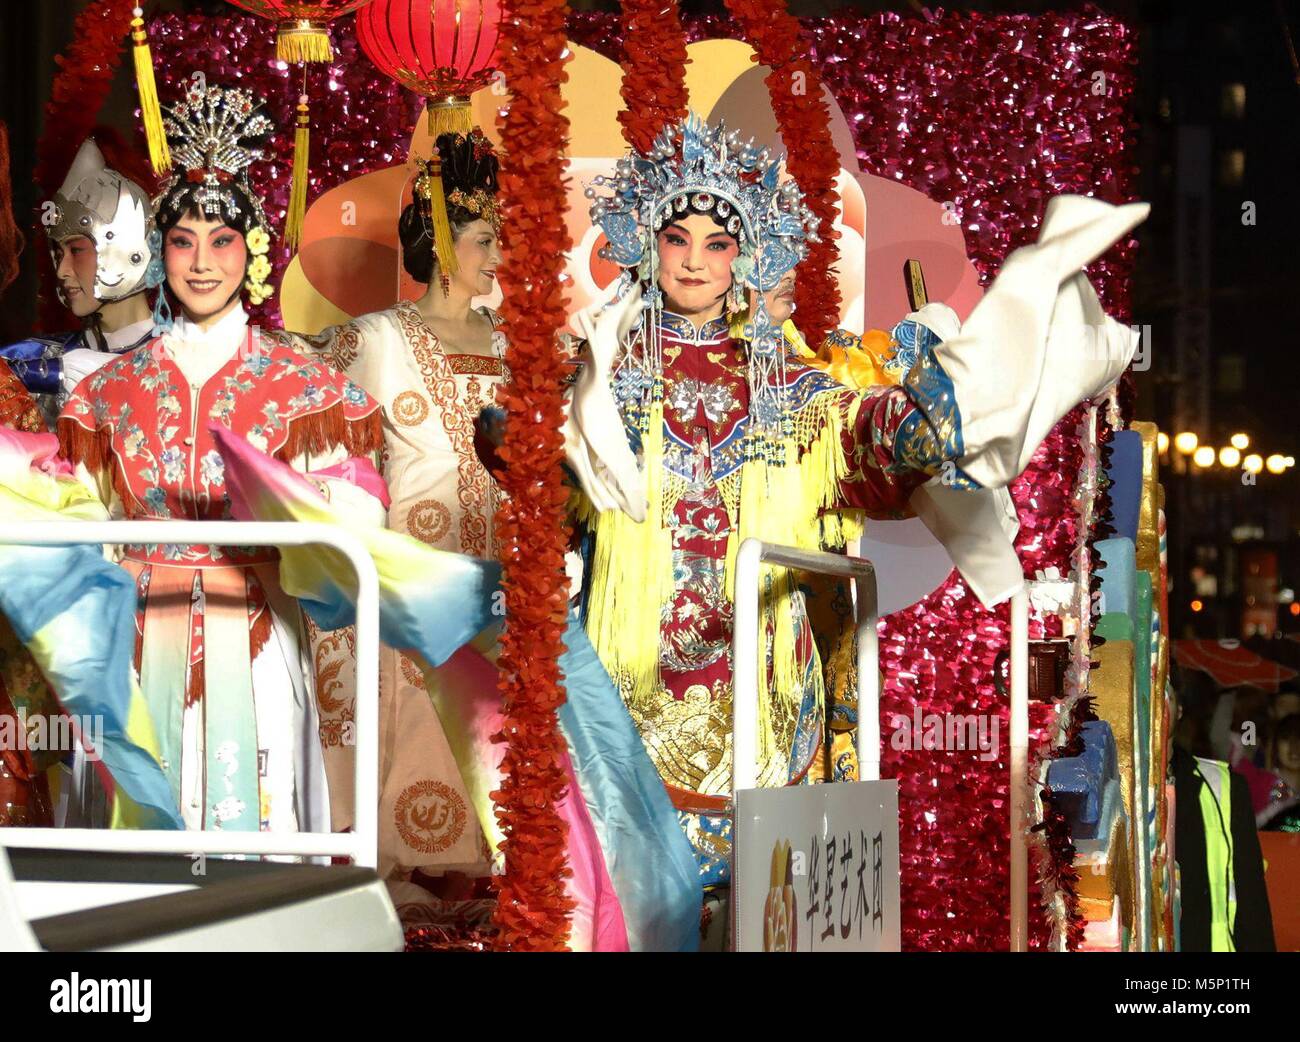 San Francisco, USA. 24 Feb, 2018. Darsteller nehmen an der jährlichen Karnevalsumzug der Chinesischen Neue Jahr in San Francisco, USA, am 24.02.2018. Über eine Million Einwohner und Besucher Samstag, beide Seiten der wichtigsten Straßen und engen Gassen in San Francisco's Chinatown an der US-Westküste, in die größte jährliche Karnevalsumzug der Chinesischen neue Jahr außerhalb Chinas. Quelle: Dong Xudong/Xinhua/Alamy leben Nachrichten Stockfoto